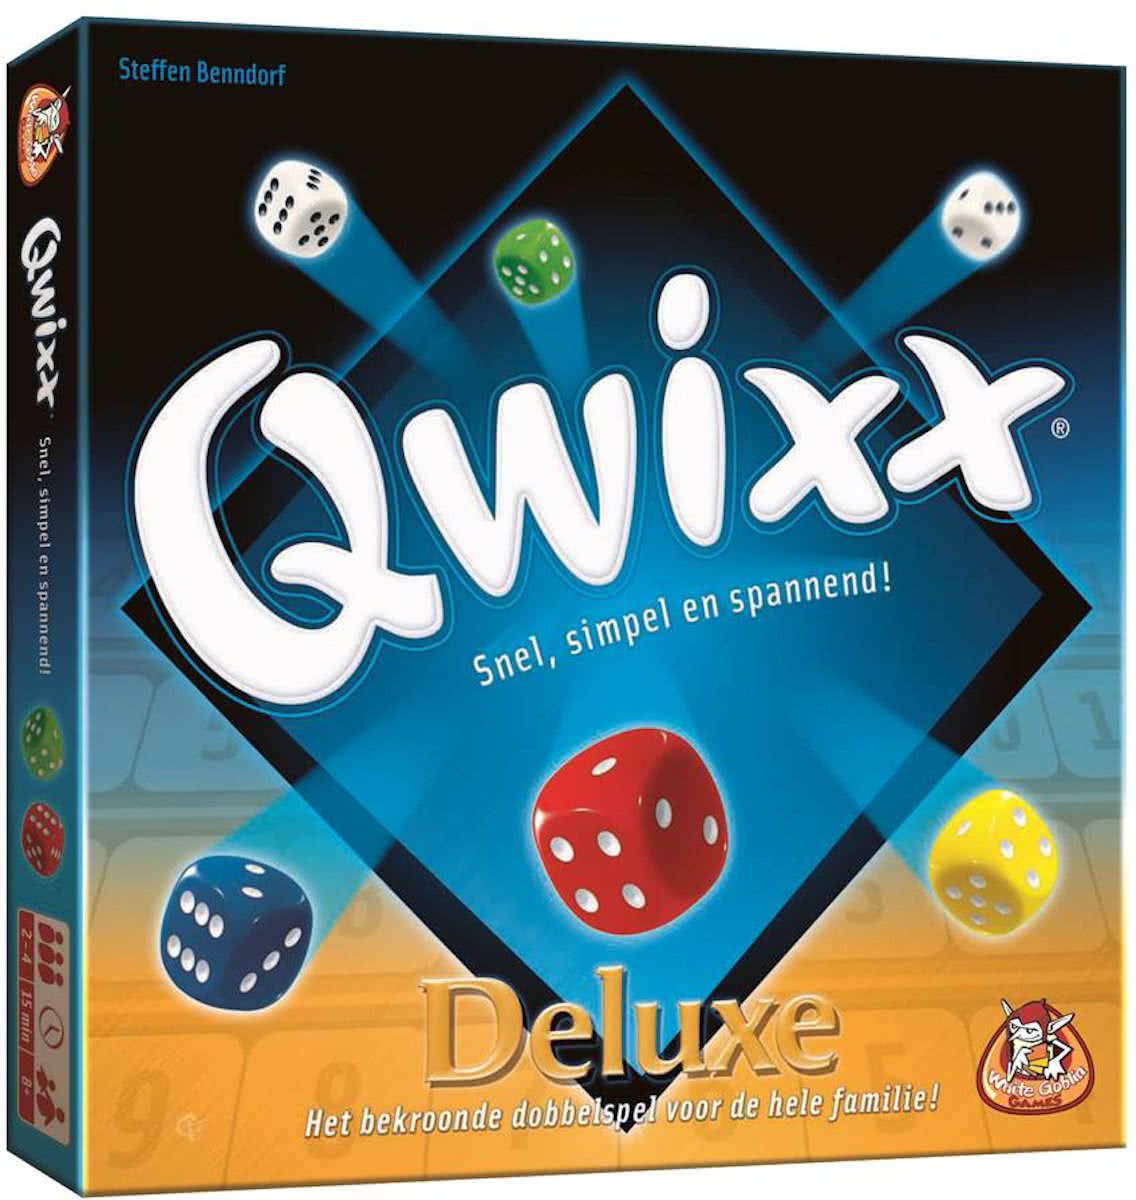 Qwixx Deluxe description reviews